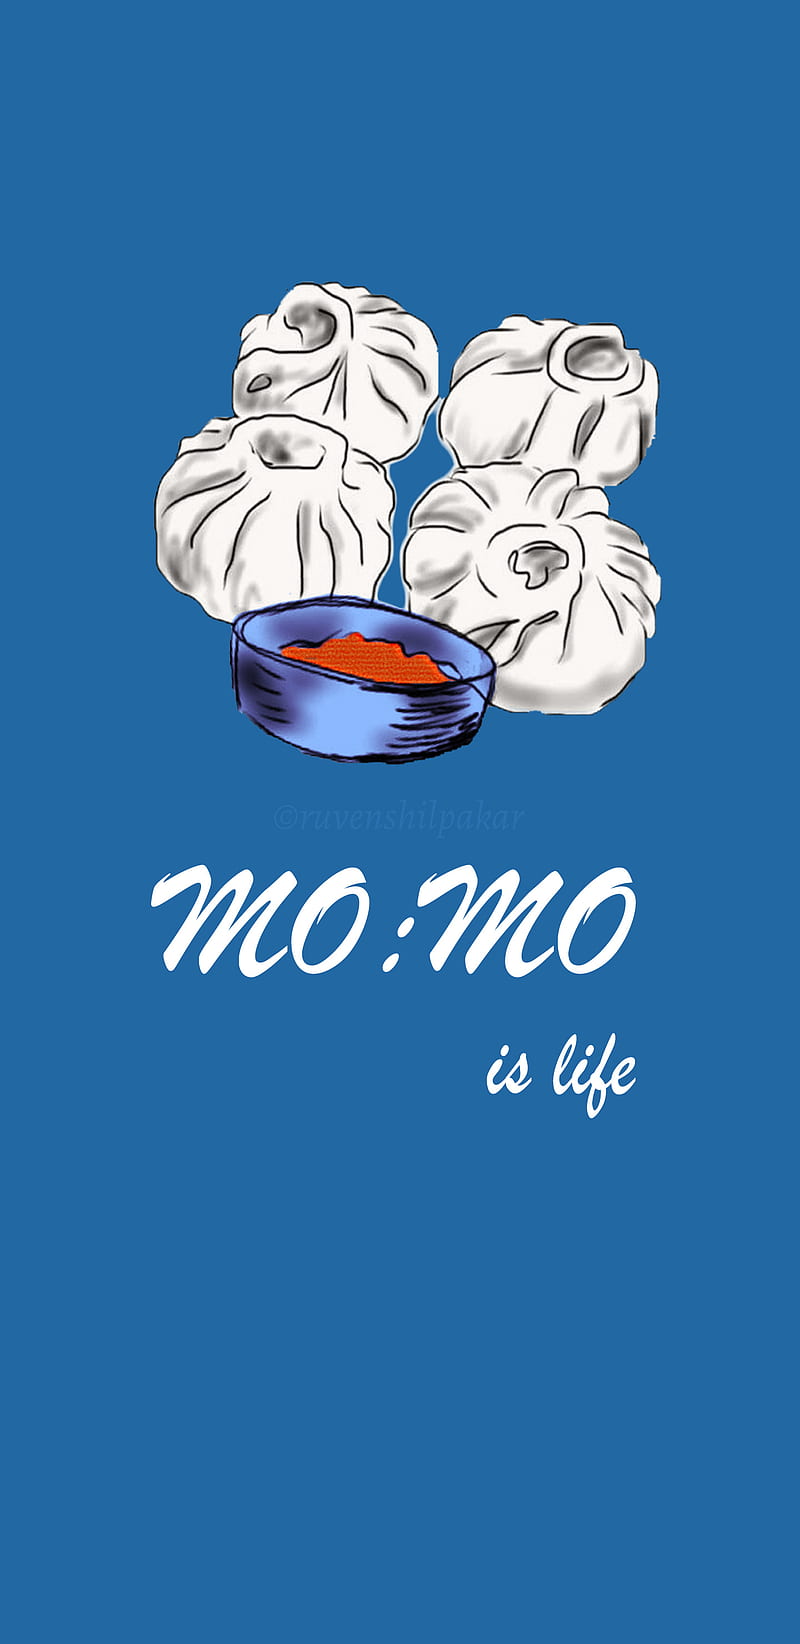 Nepali momo art, dumplings, chinese, food, kathmandu, dish, love, HD phone wallpaper